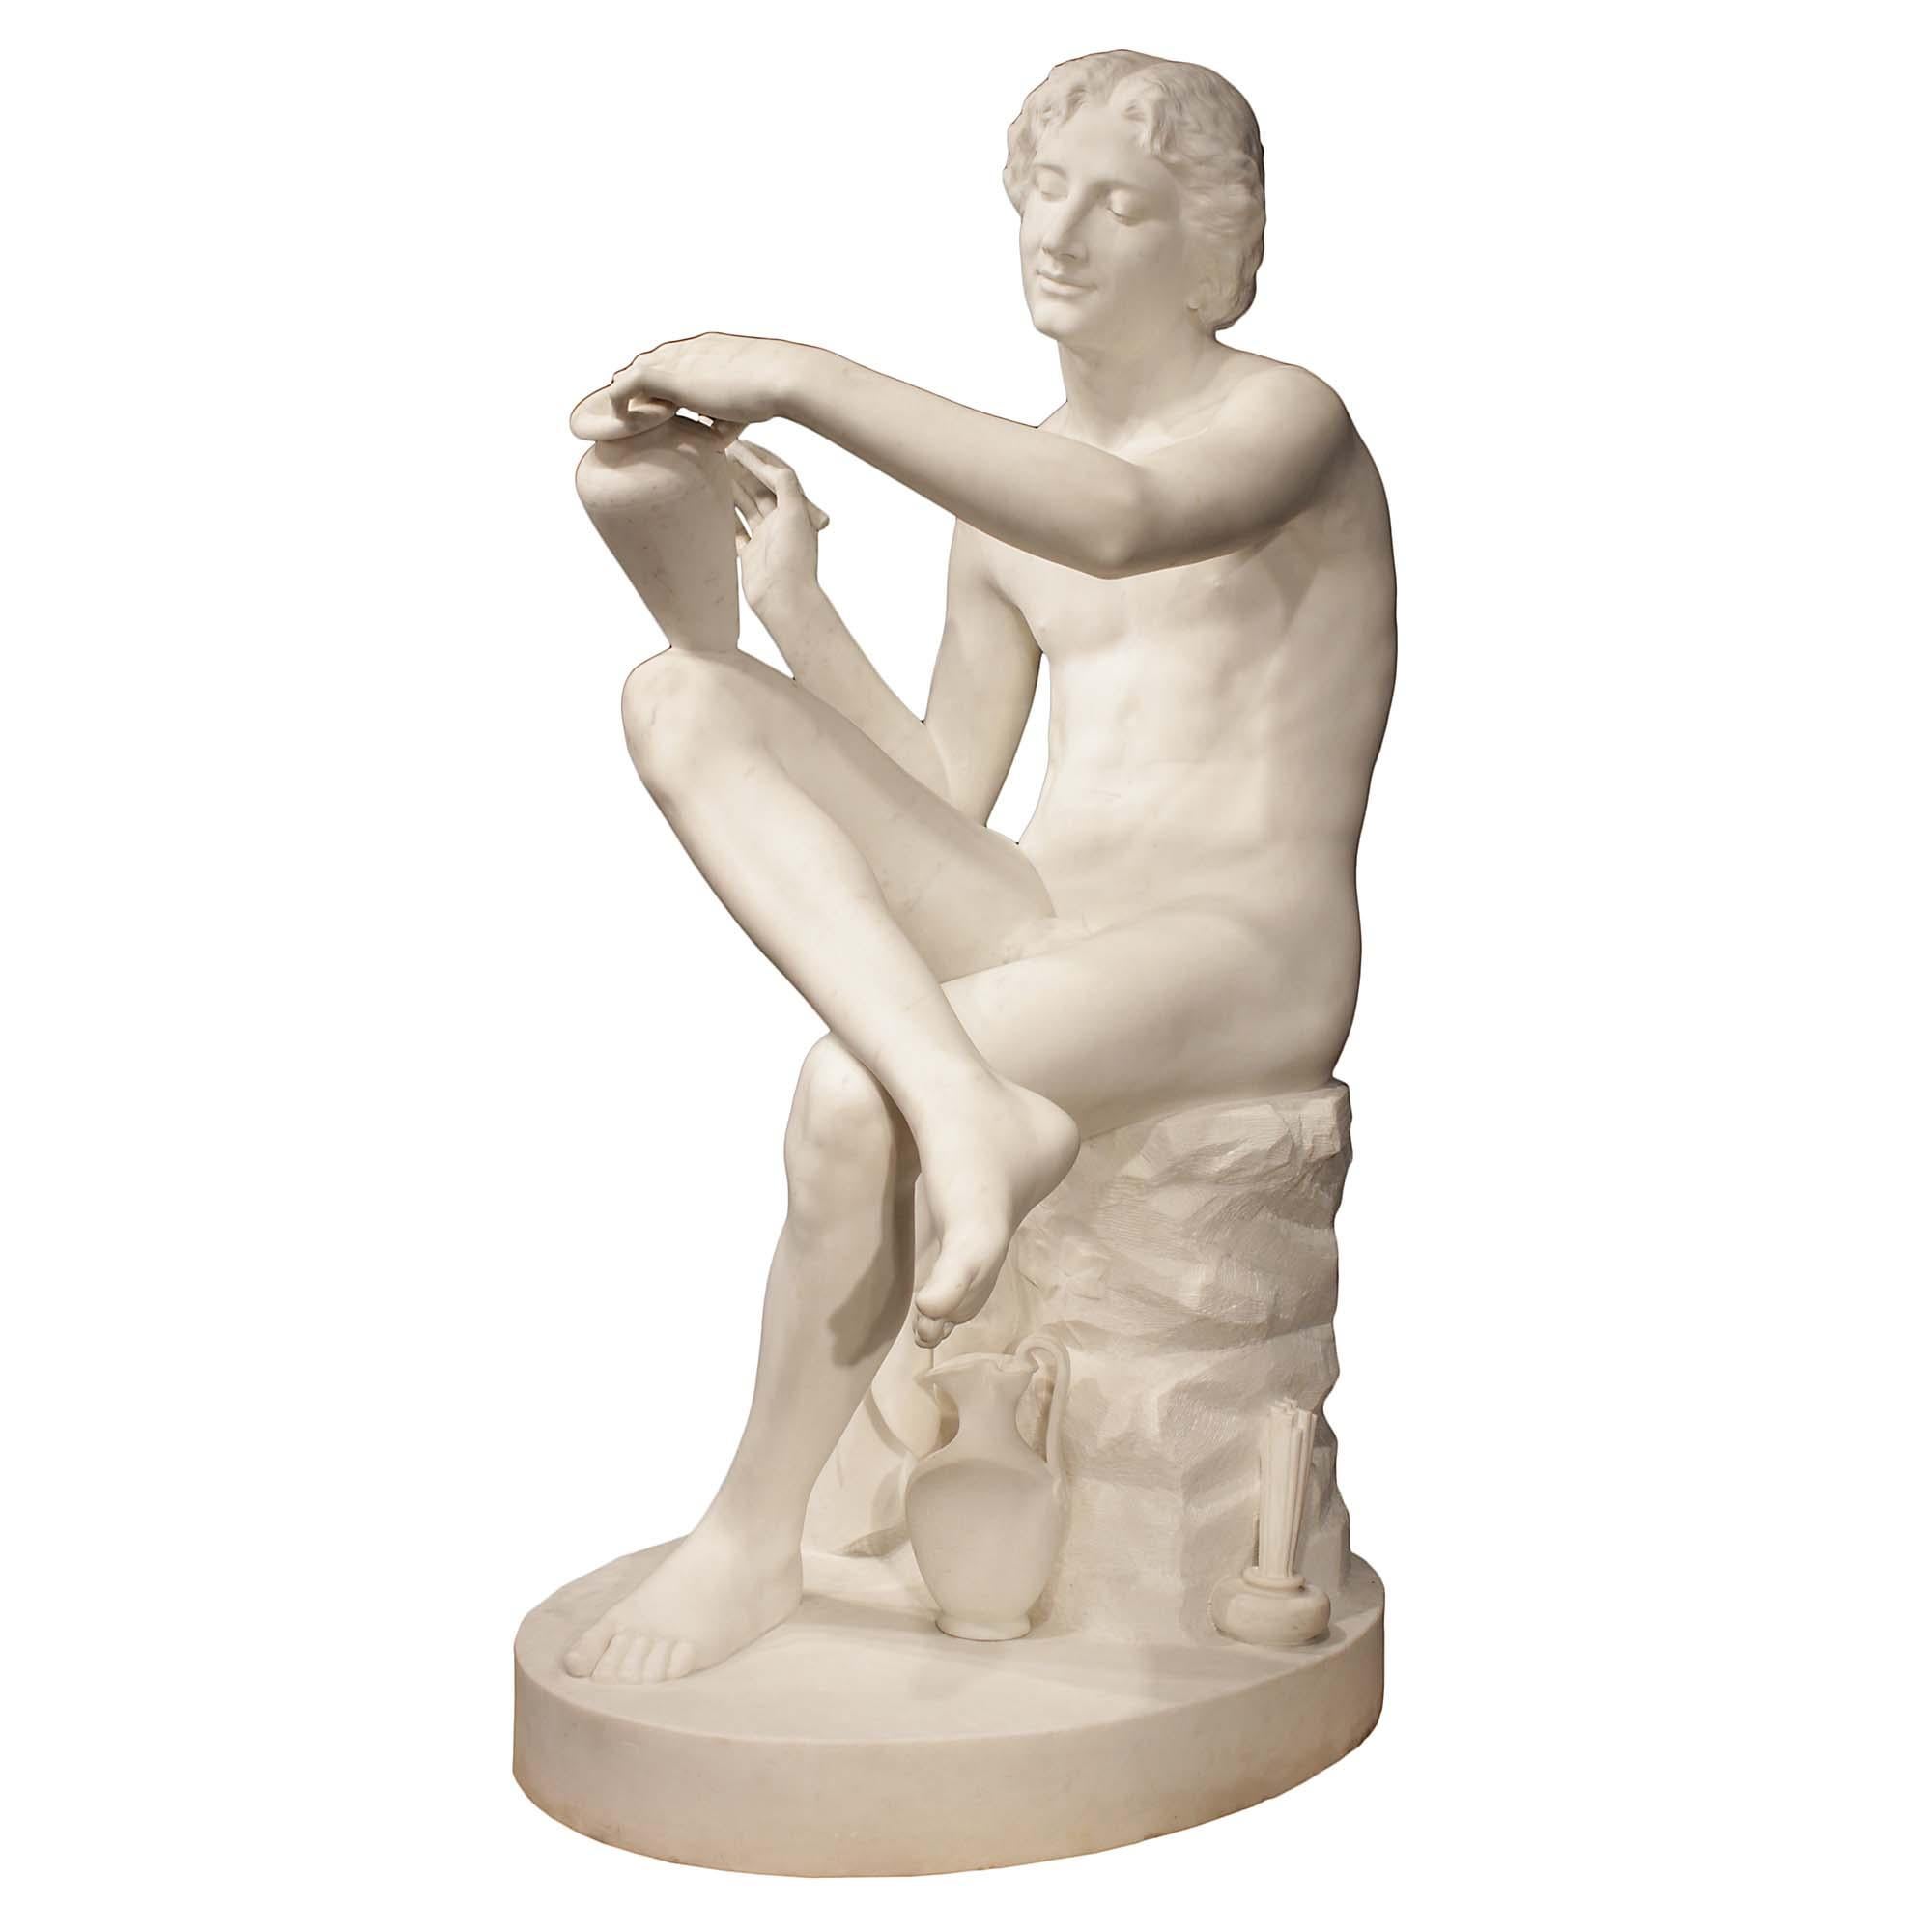 Très impressionnante sculpture italienne du XIXe siècle en marbre blanc de Carrare massif, signée S. Whiting 1875. La statue est érigée sur une base circulaire représentant un artiste drapé, assis, les jambes croisées, en train de contempler son